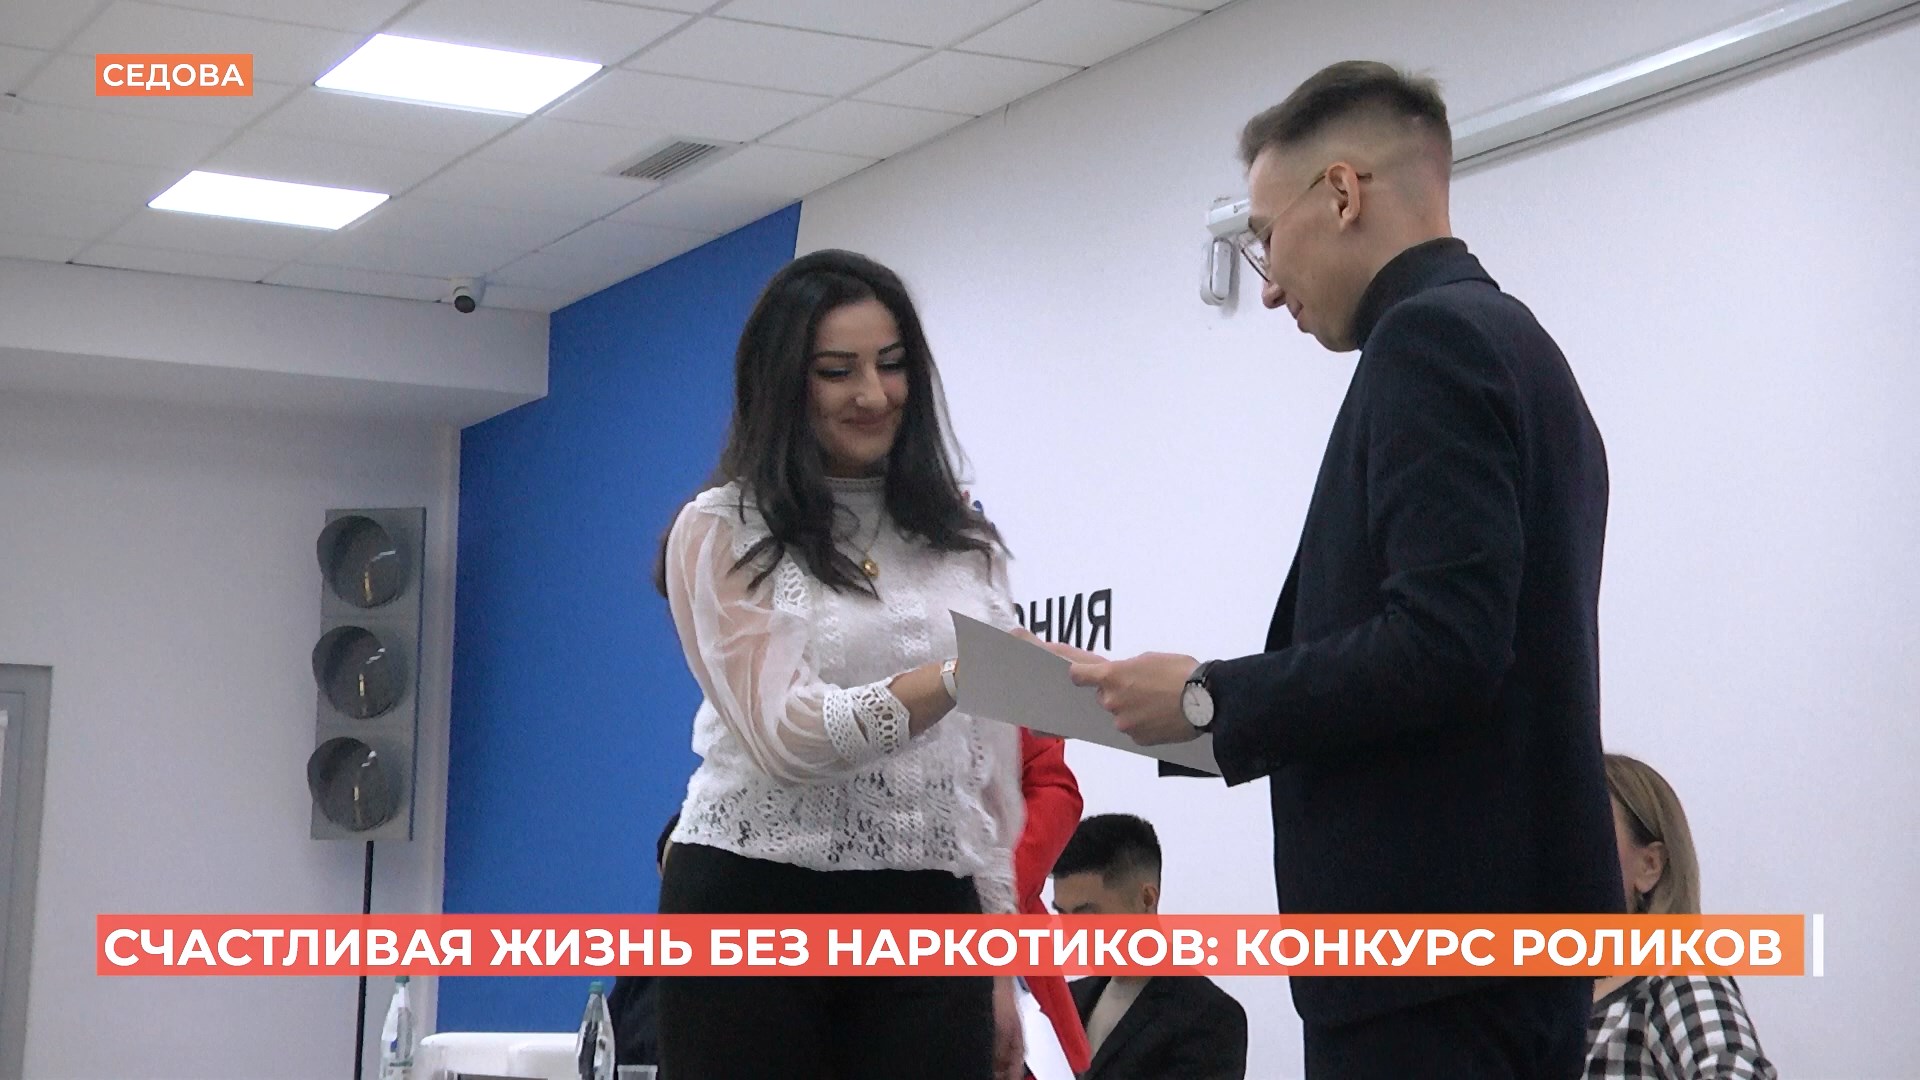 Итоги молодежного конкурса роликов о вреде наркомании подвели в Ростове